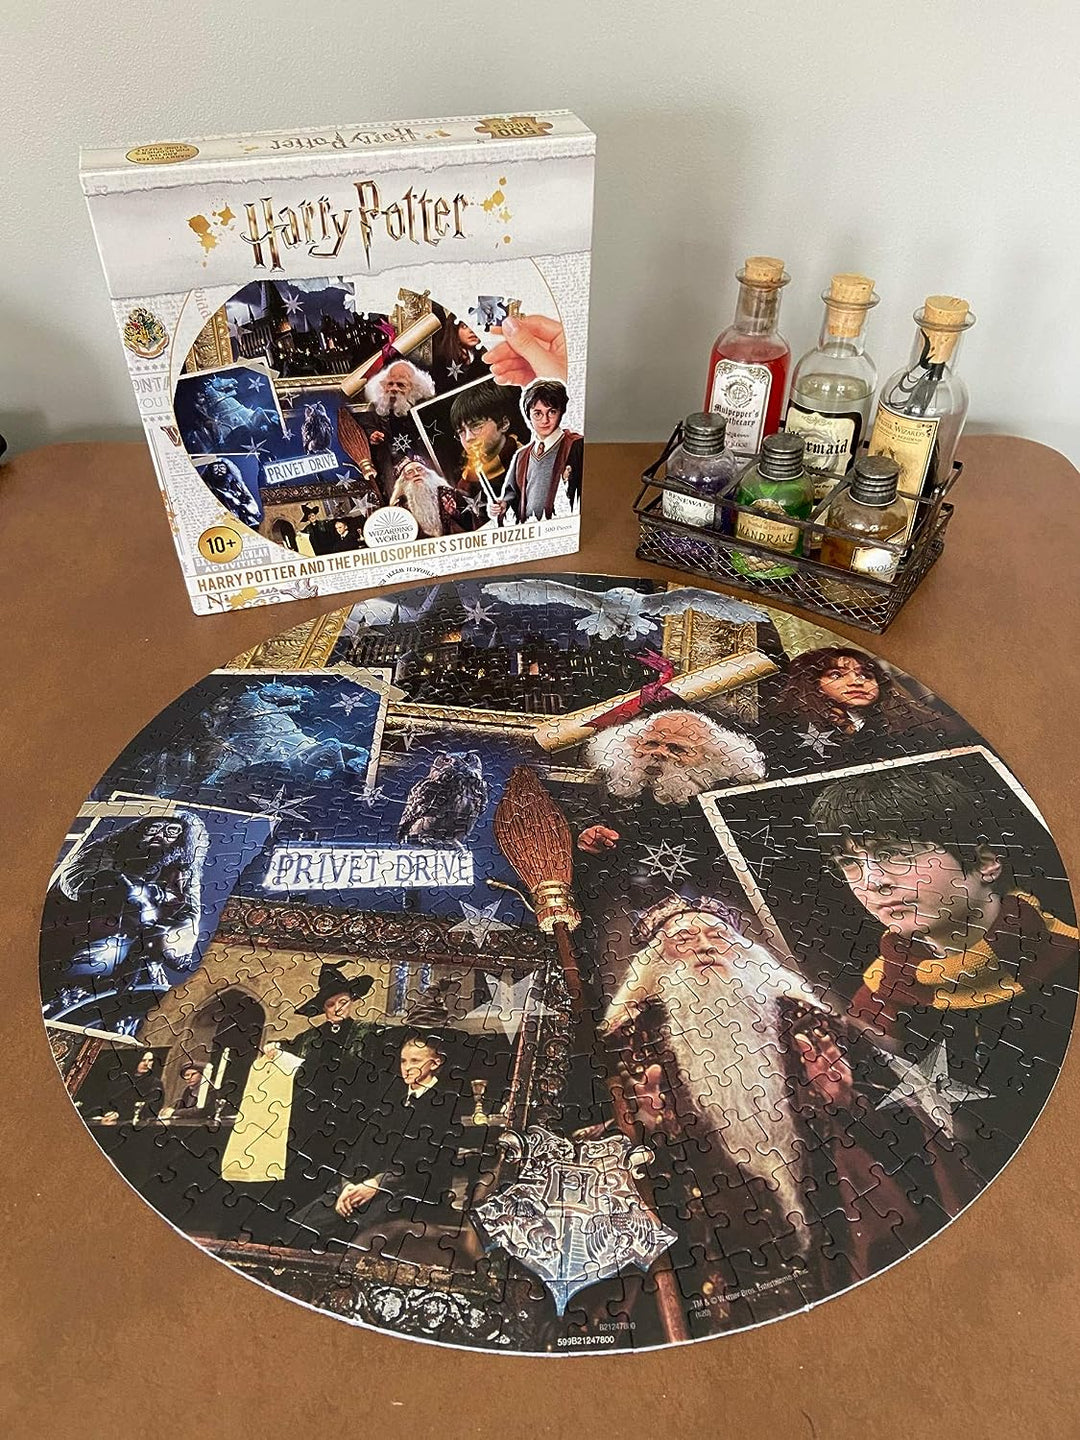 Winning Moves 784 WM00370 Harry Potter Kinder-Puzzle, rund, 500 Teile, Stein der Weisen, 500 Teile